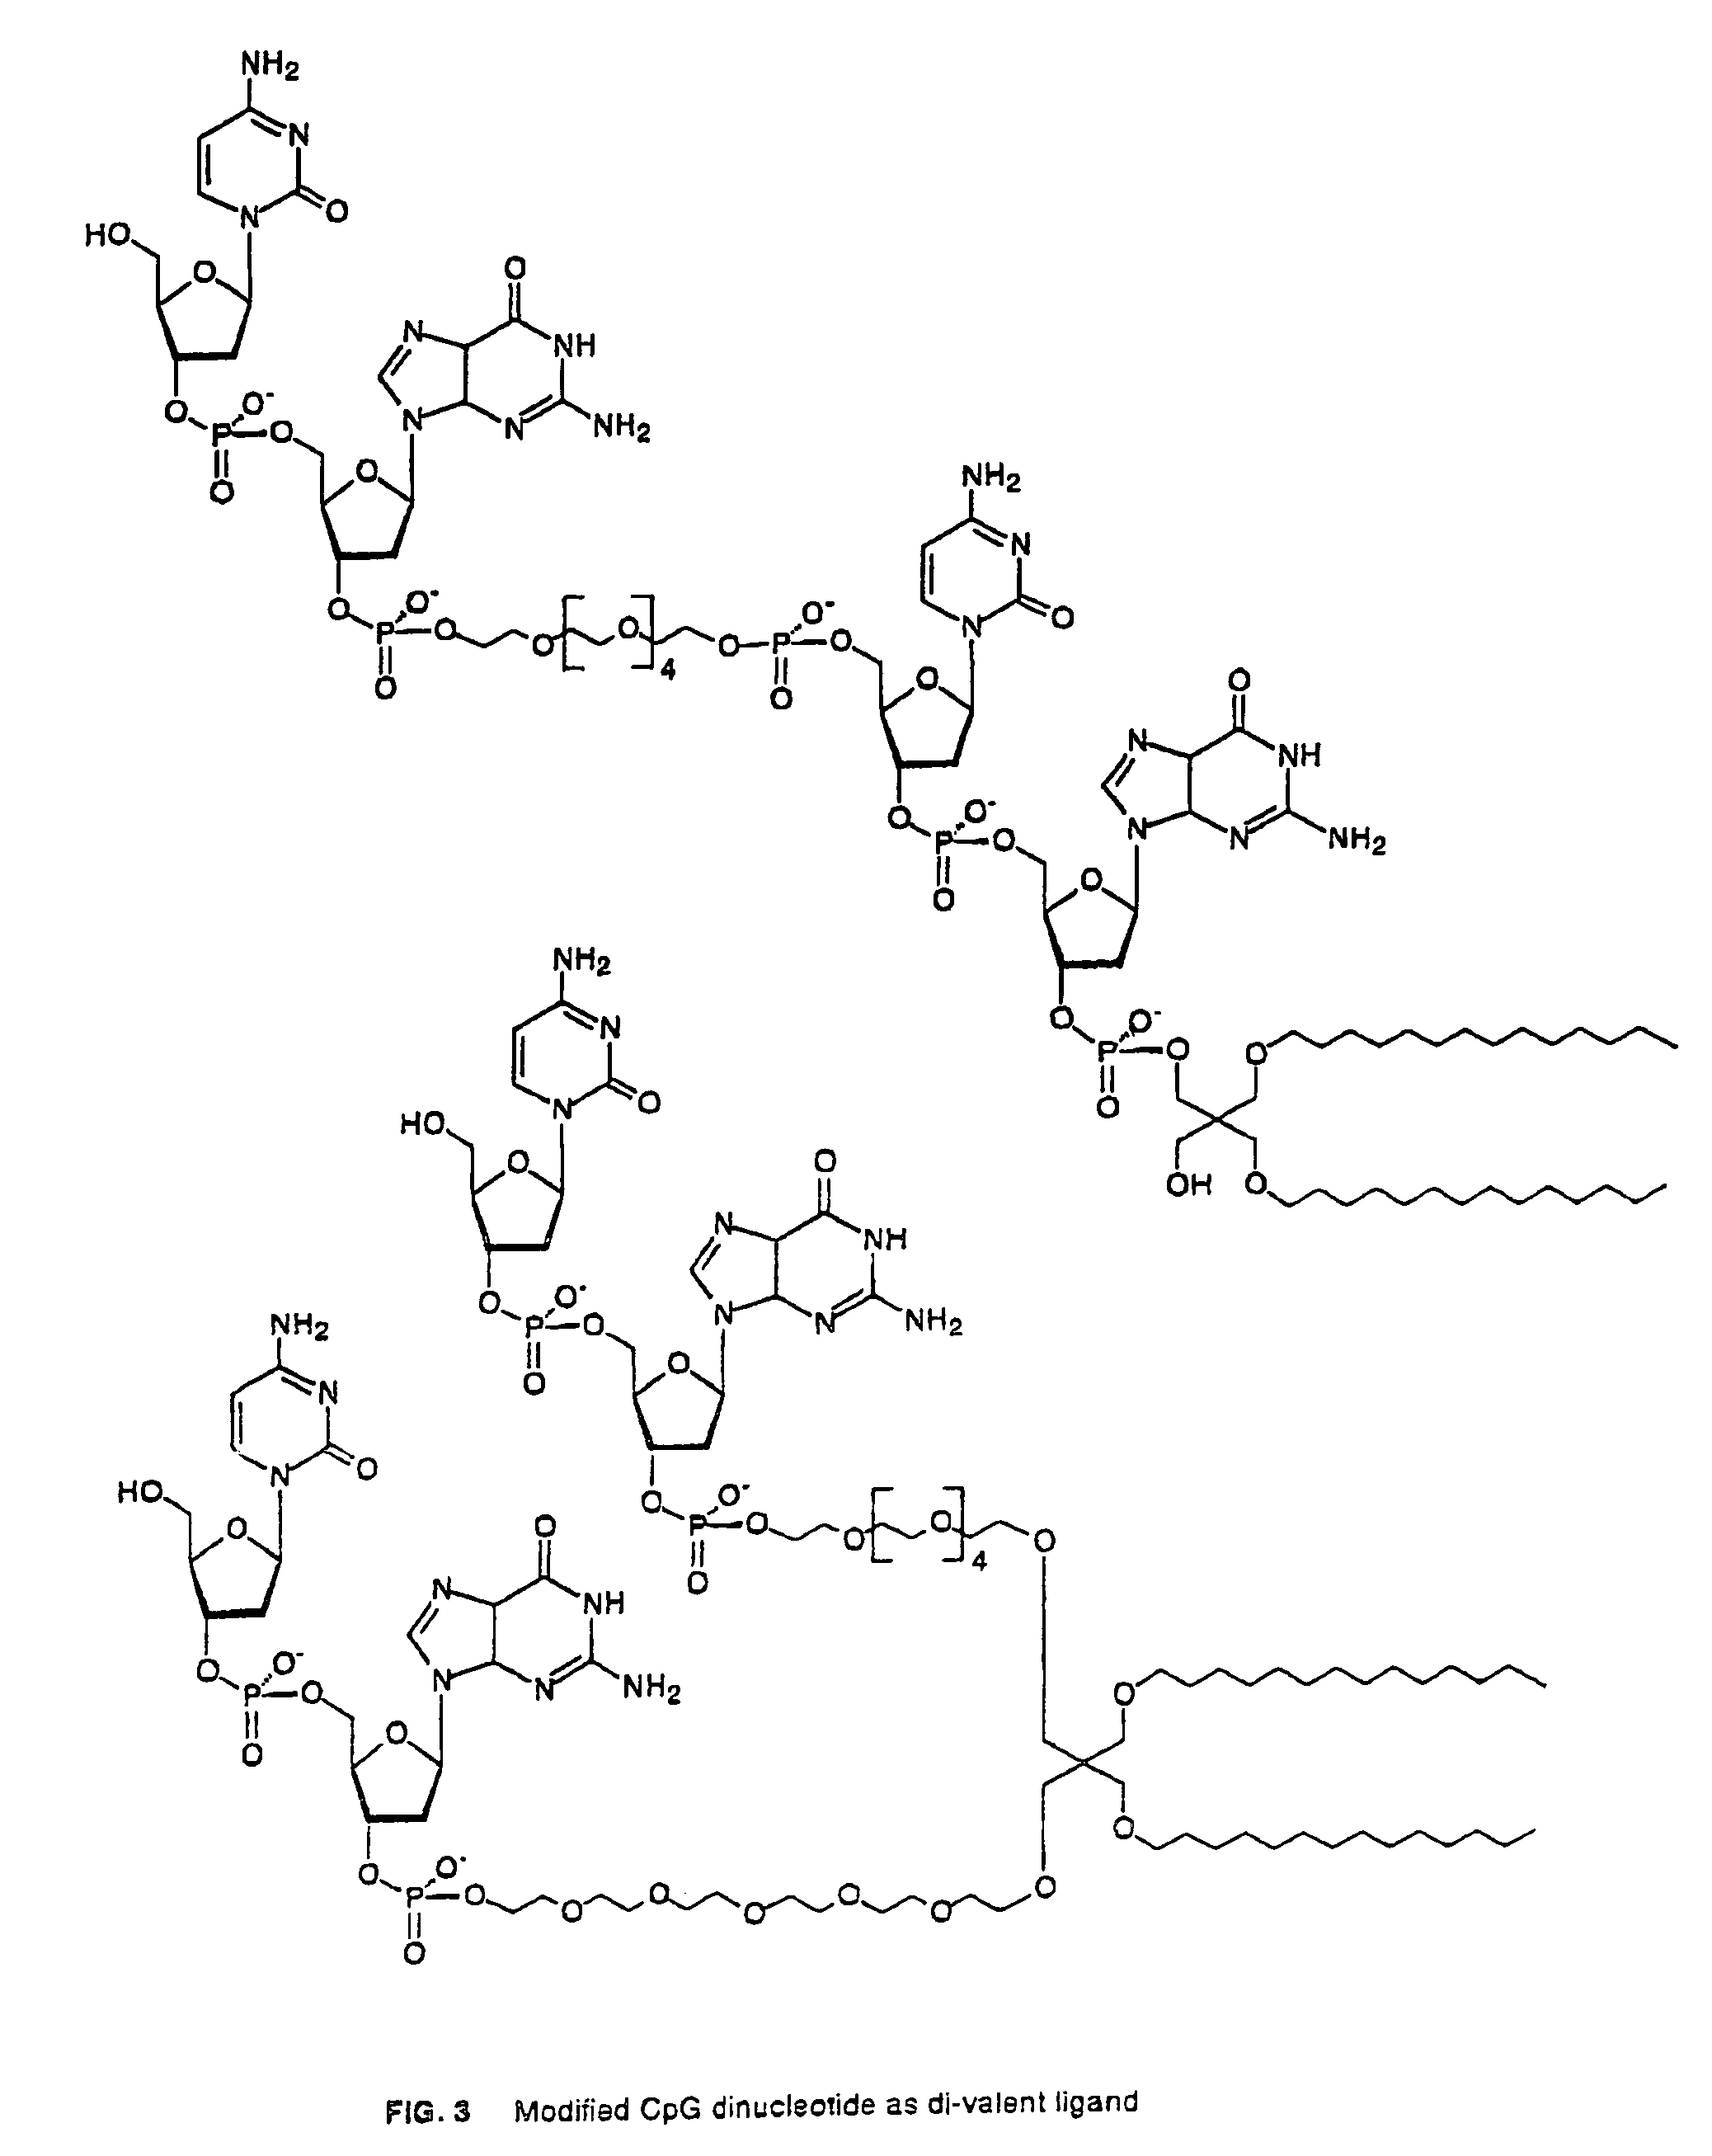 Immunostimulatory, covalently lipidated oligonucleotides